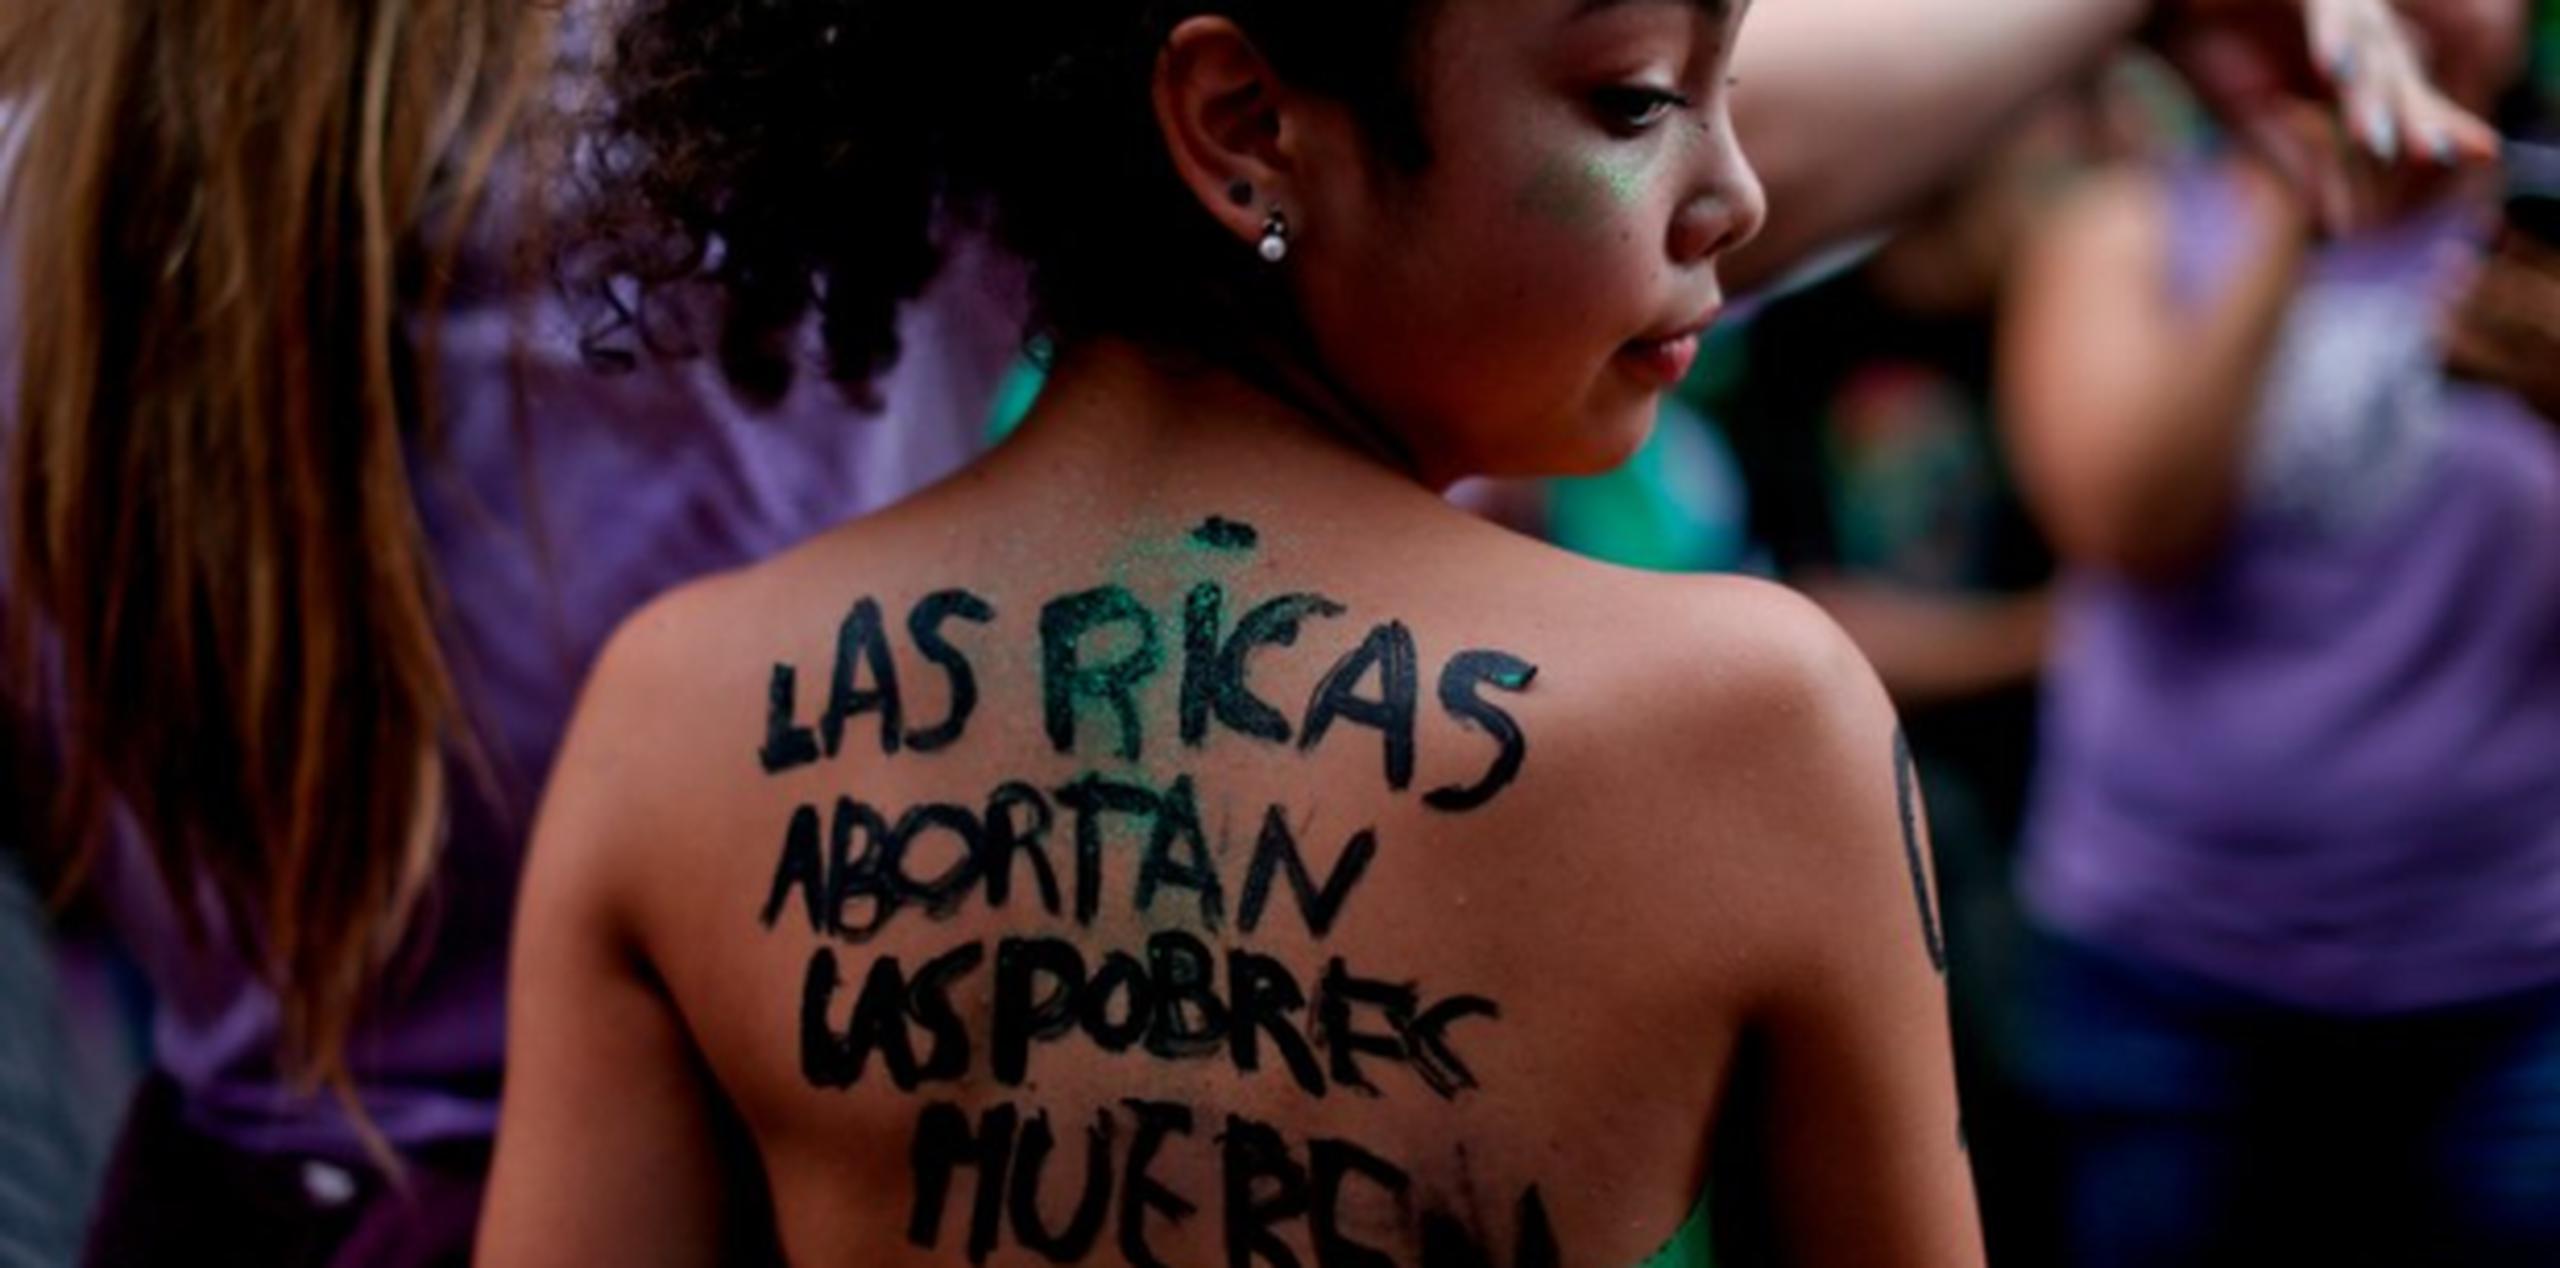 Aunque Macri se manifestó en contra de la interrupción voluntaria del embarazo se comprometió a no vetar la norma en caso de que sea aprobada, lo que por el momento es incierto. (AP)

